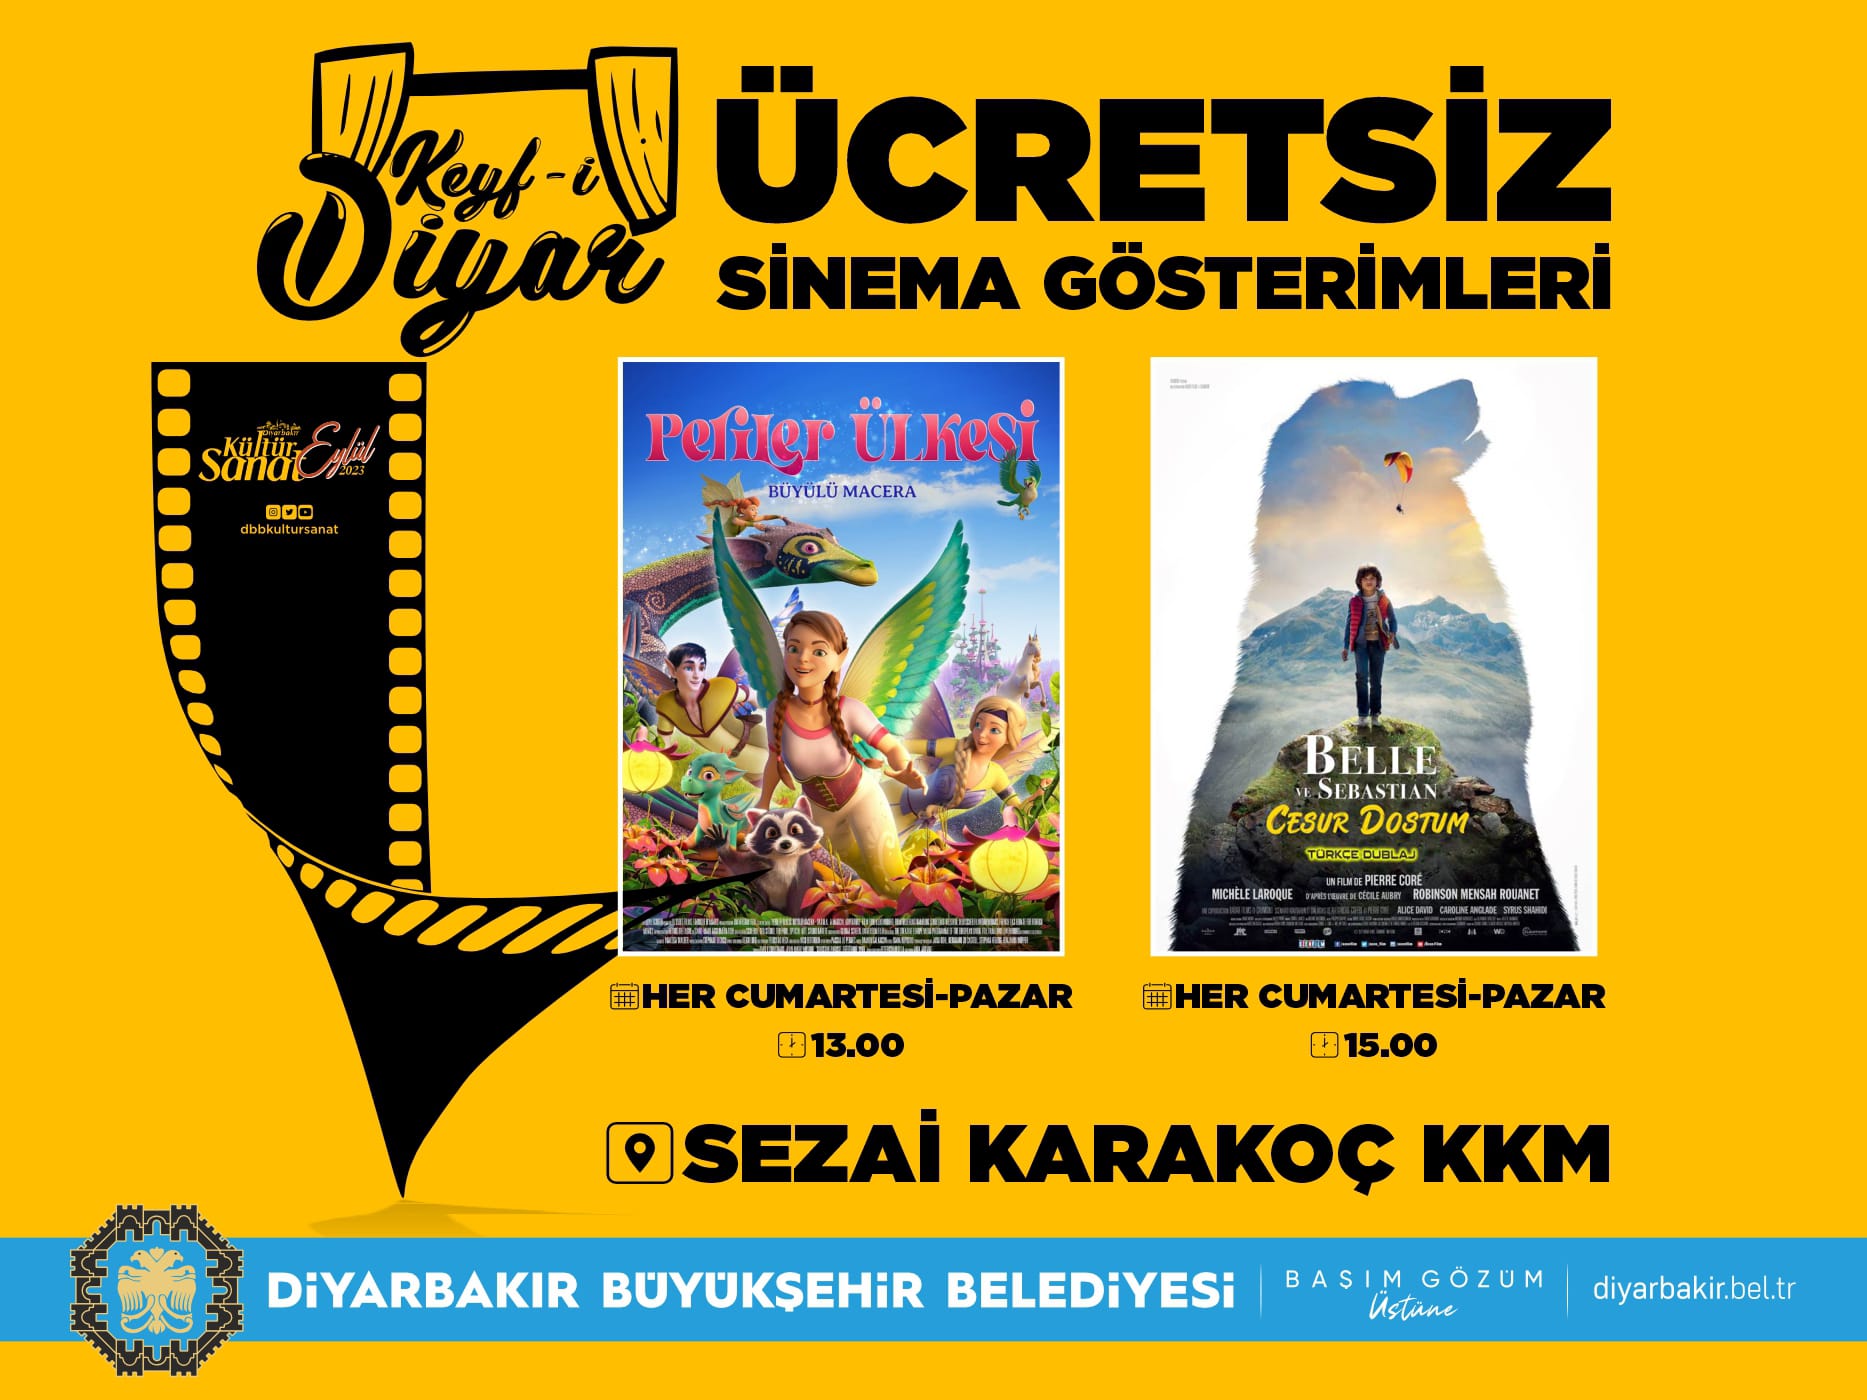 Diyarbakır’da Keyf-i Diyar ücretsiz sinema gösterimleri